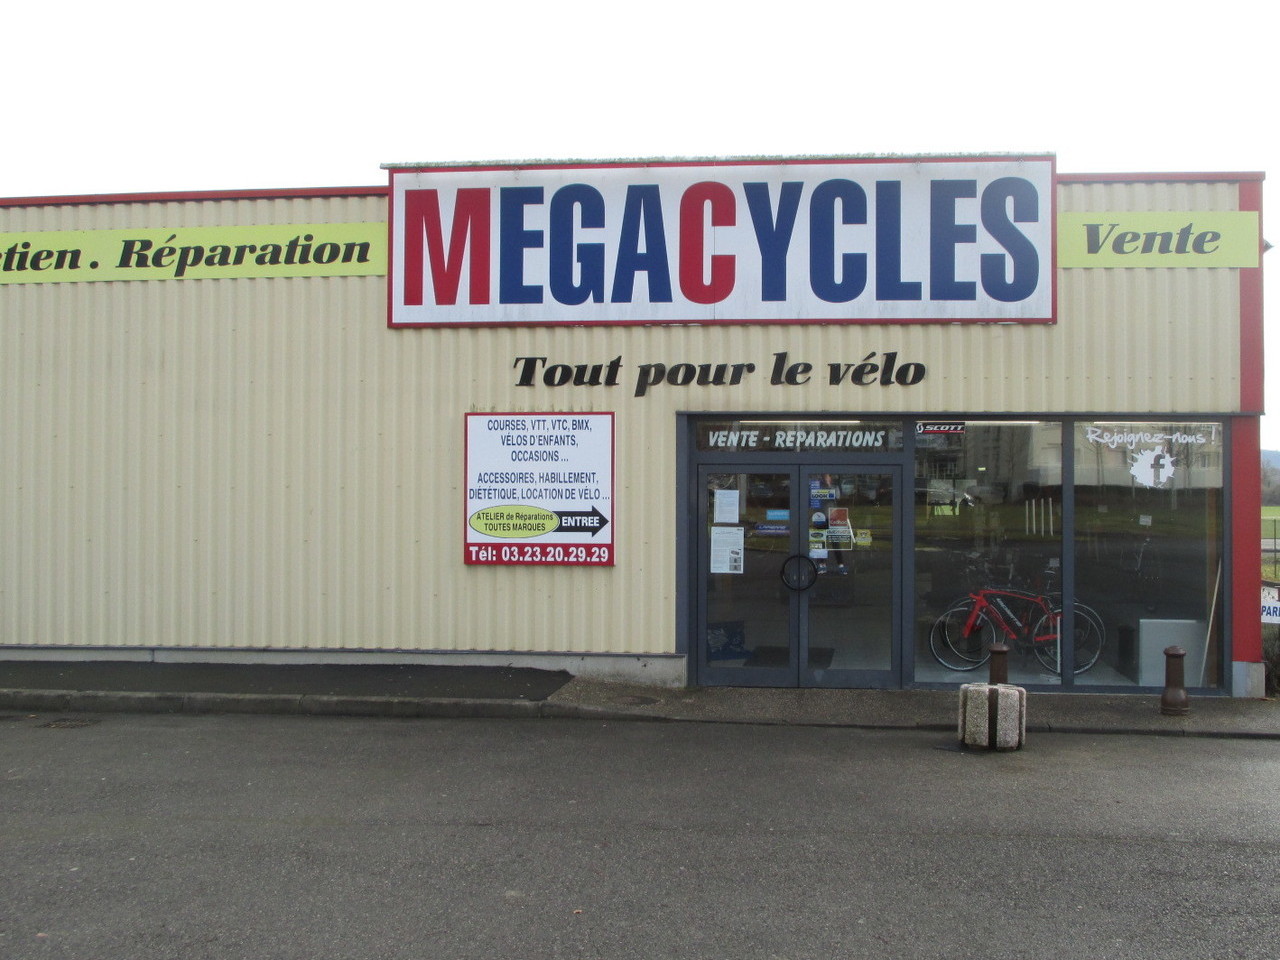 Megacycles magasin de vélo à Laon facade magasin